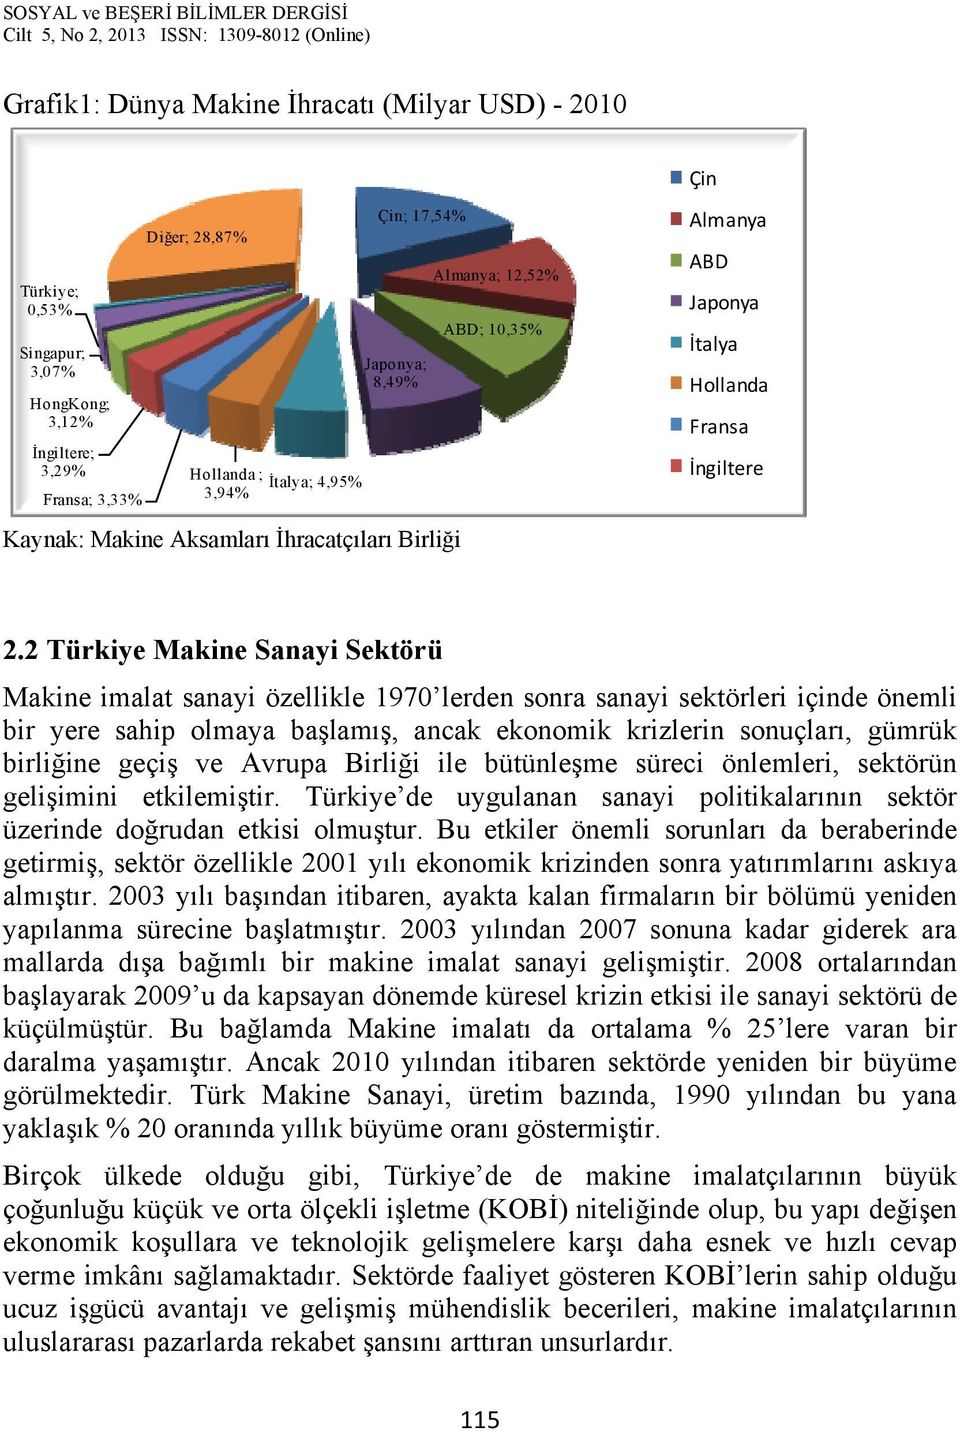 2 Türkiye Makine Sanayi Sektörü Makine imalat sanayi özellikle 1970 lerden sonra sanayi sektörleri içinde önemli bir yere sahip olmaya başlamış, ancak ekonomik krizlerin sonuçları, gümrük birliğine